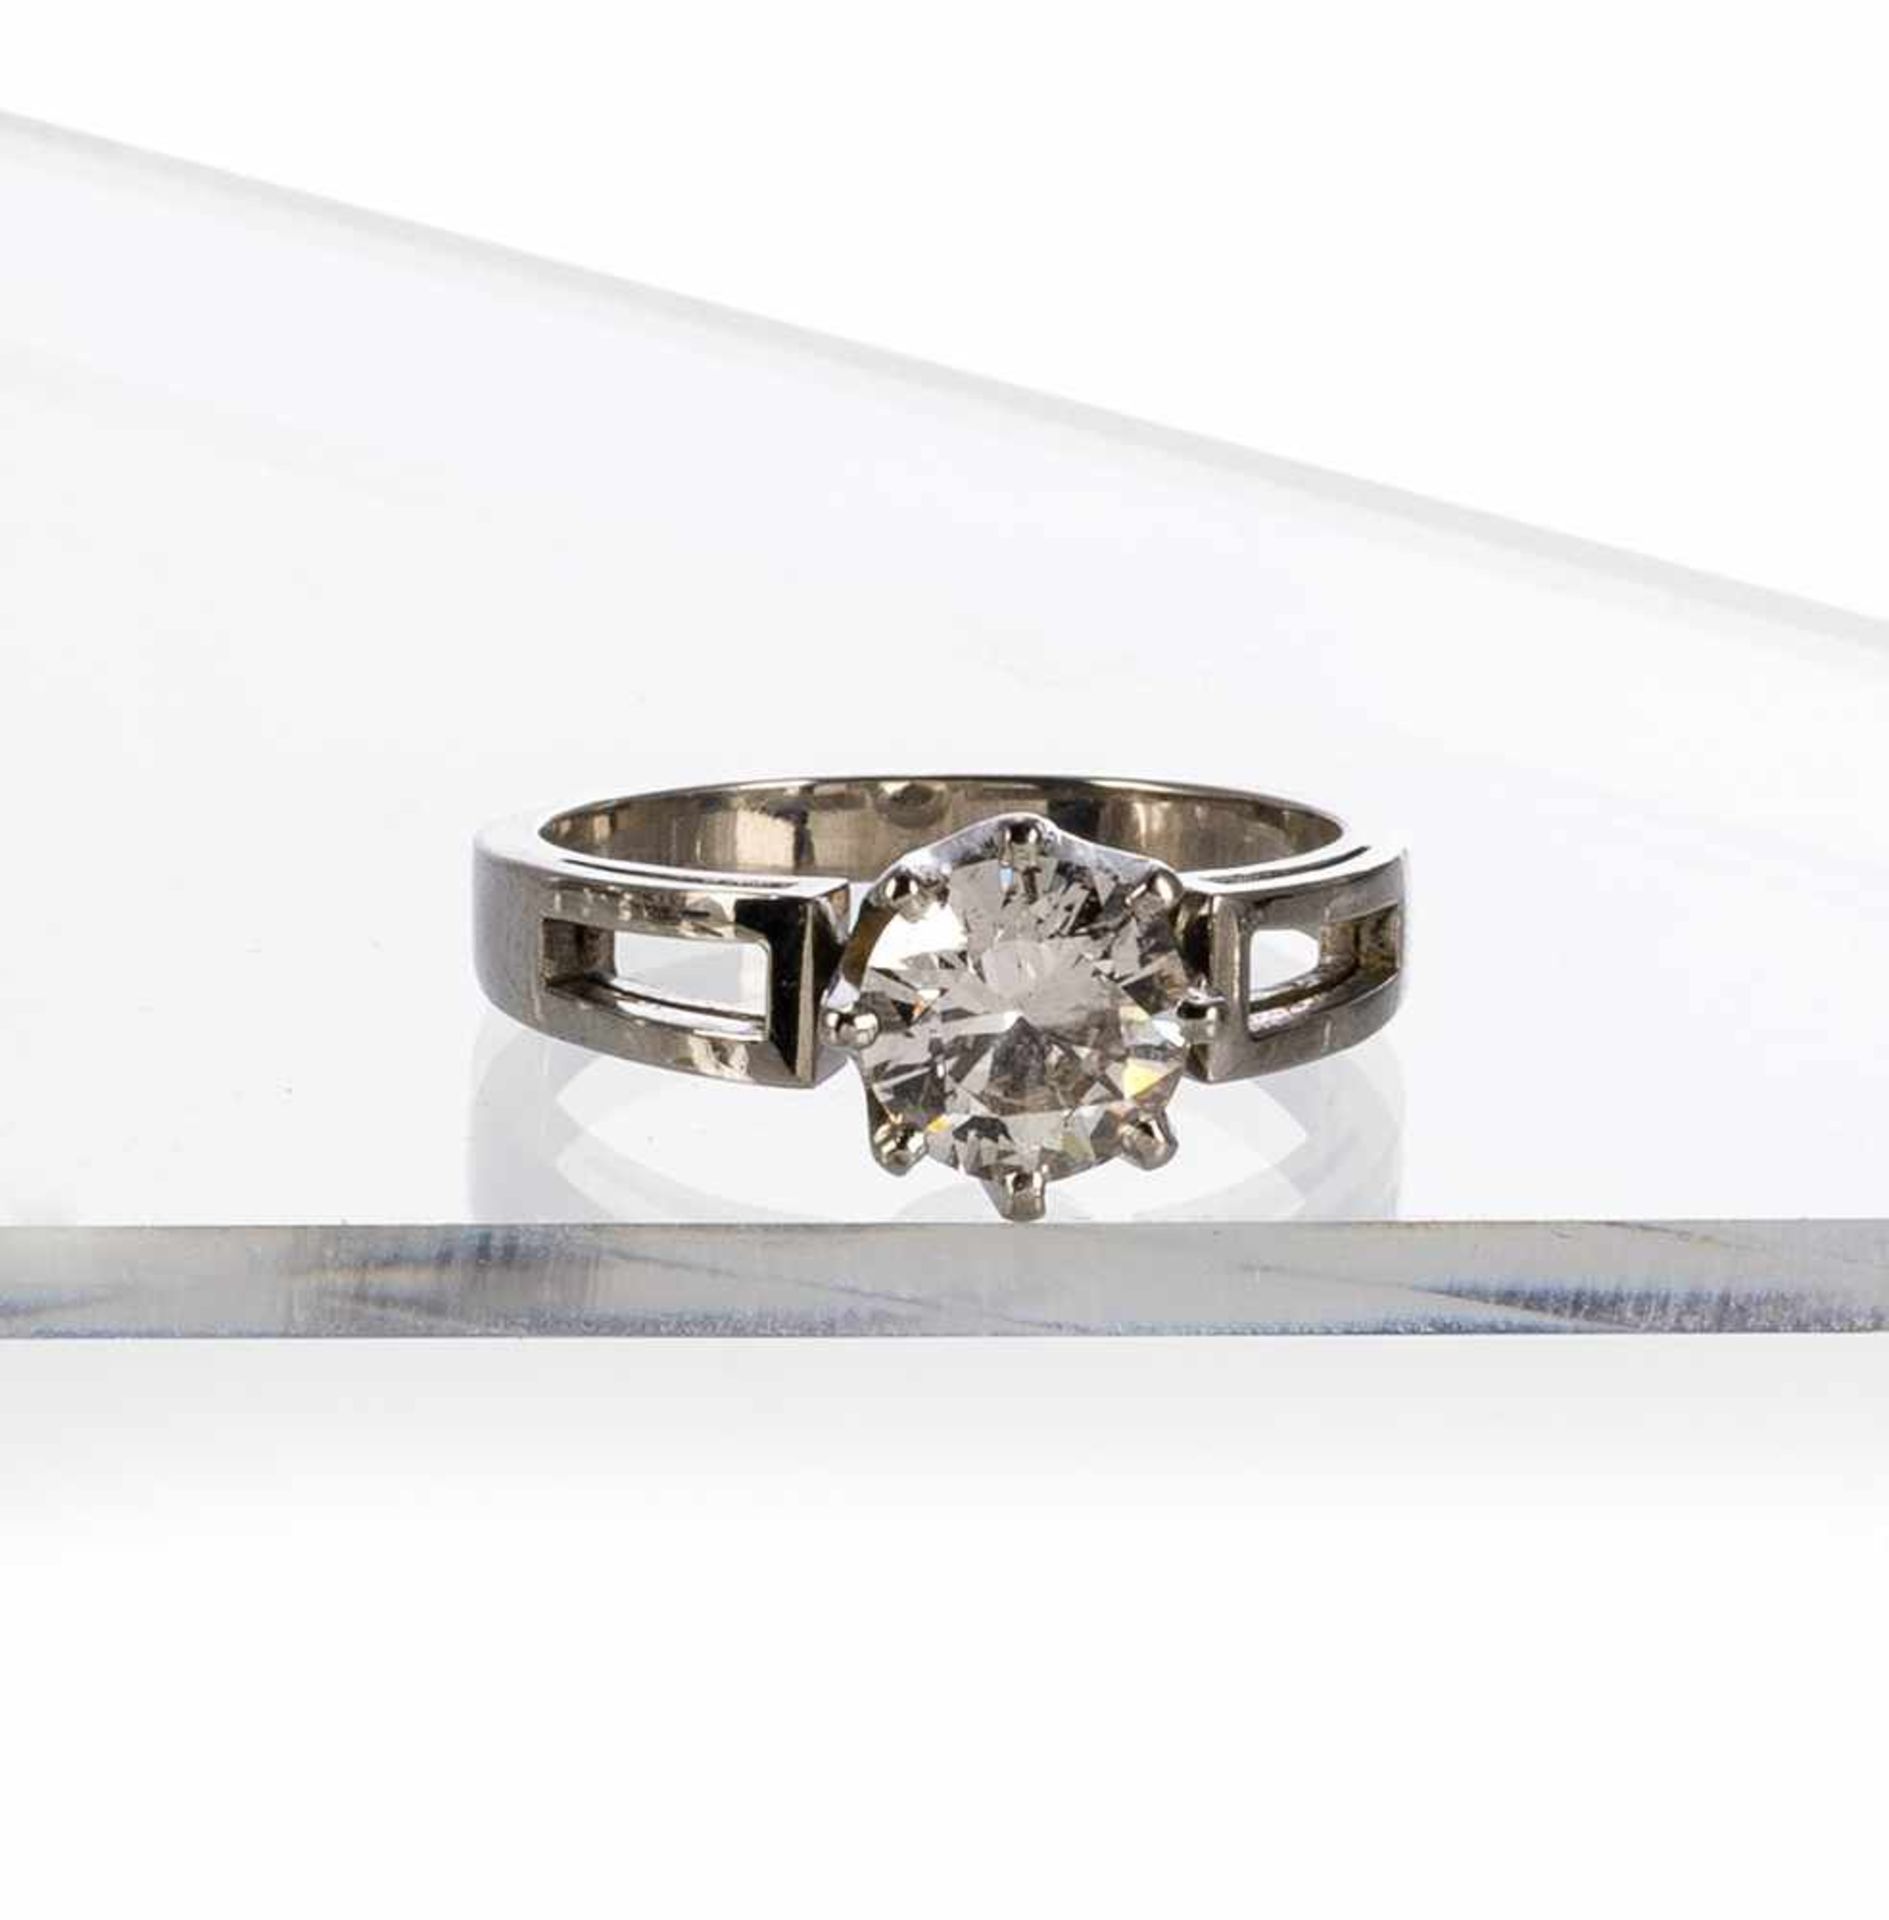 Diamant-Ring1950er Jahre750 Weißgold-Schiene, Diamant in Krappen-Fassung von ca. 1,7 ct. (am Rand